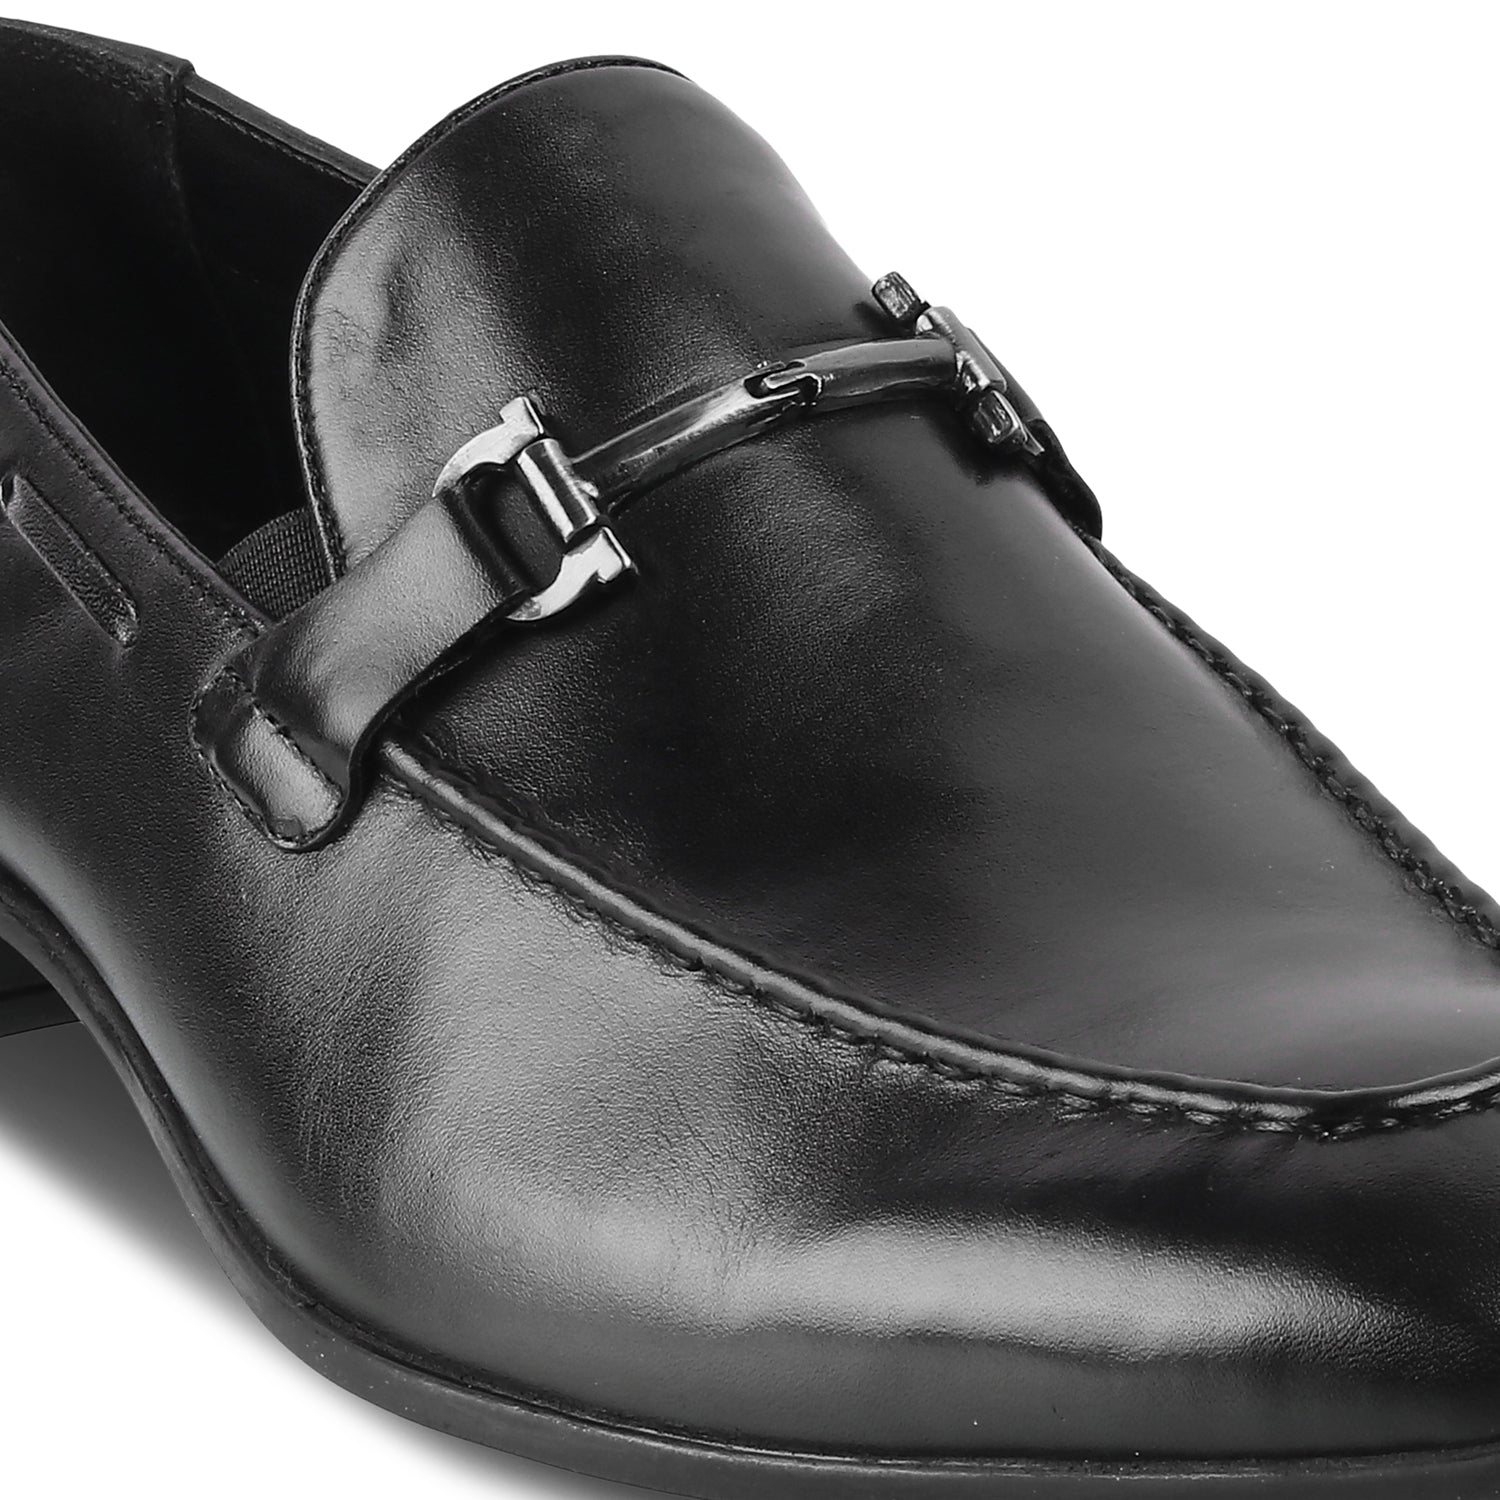 Black horse-bit loafers for men